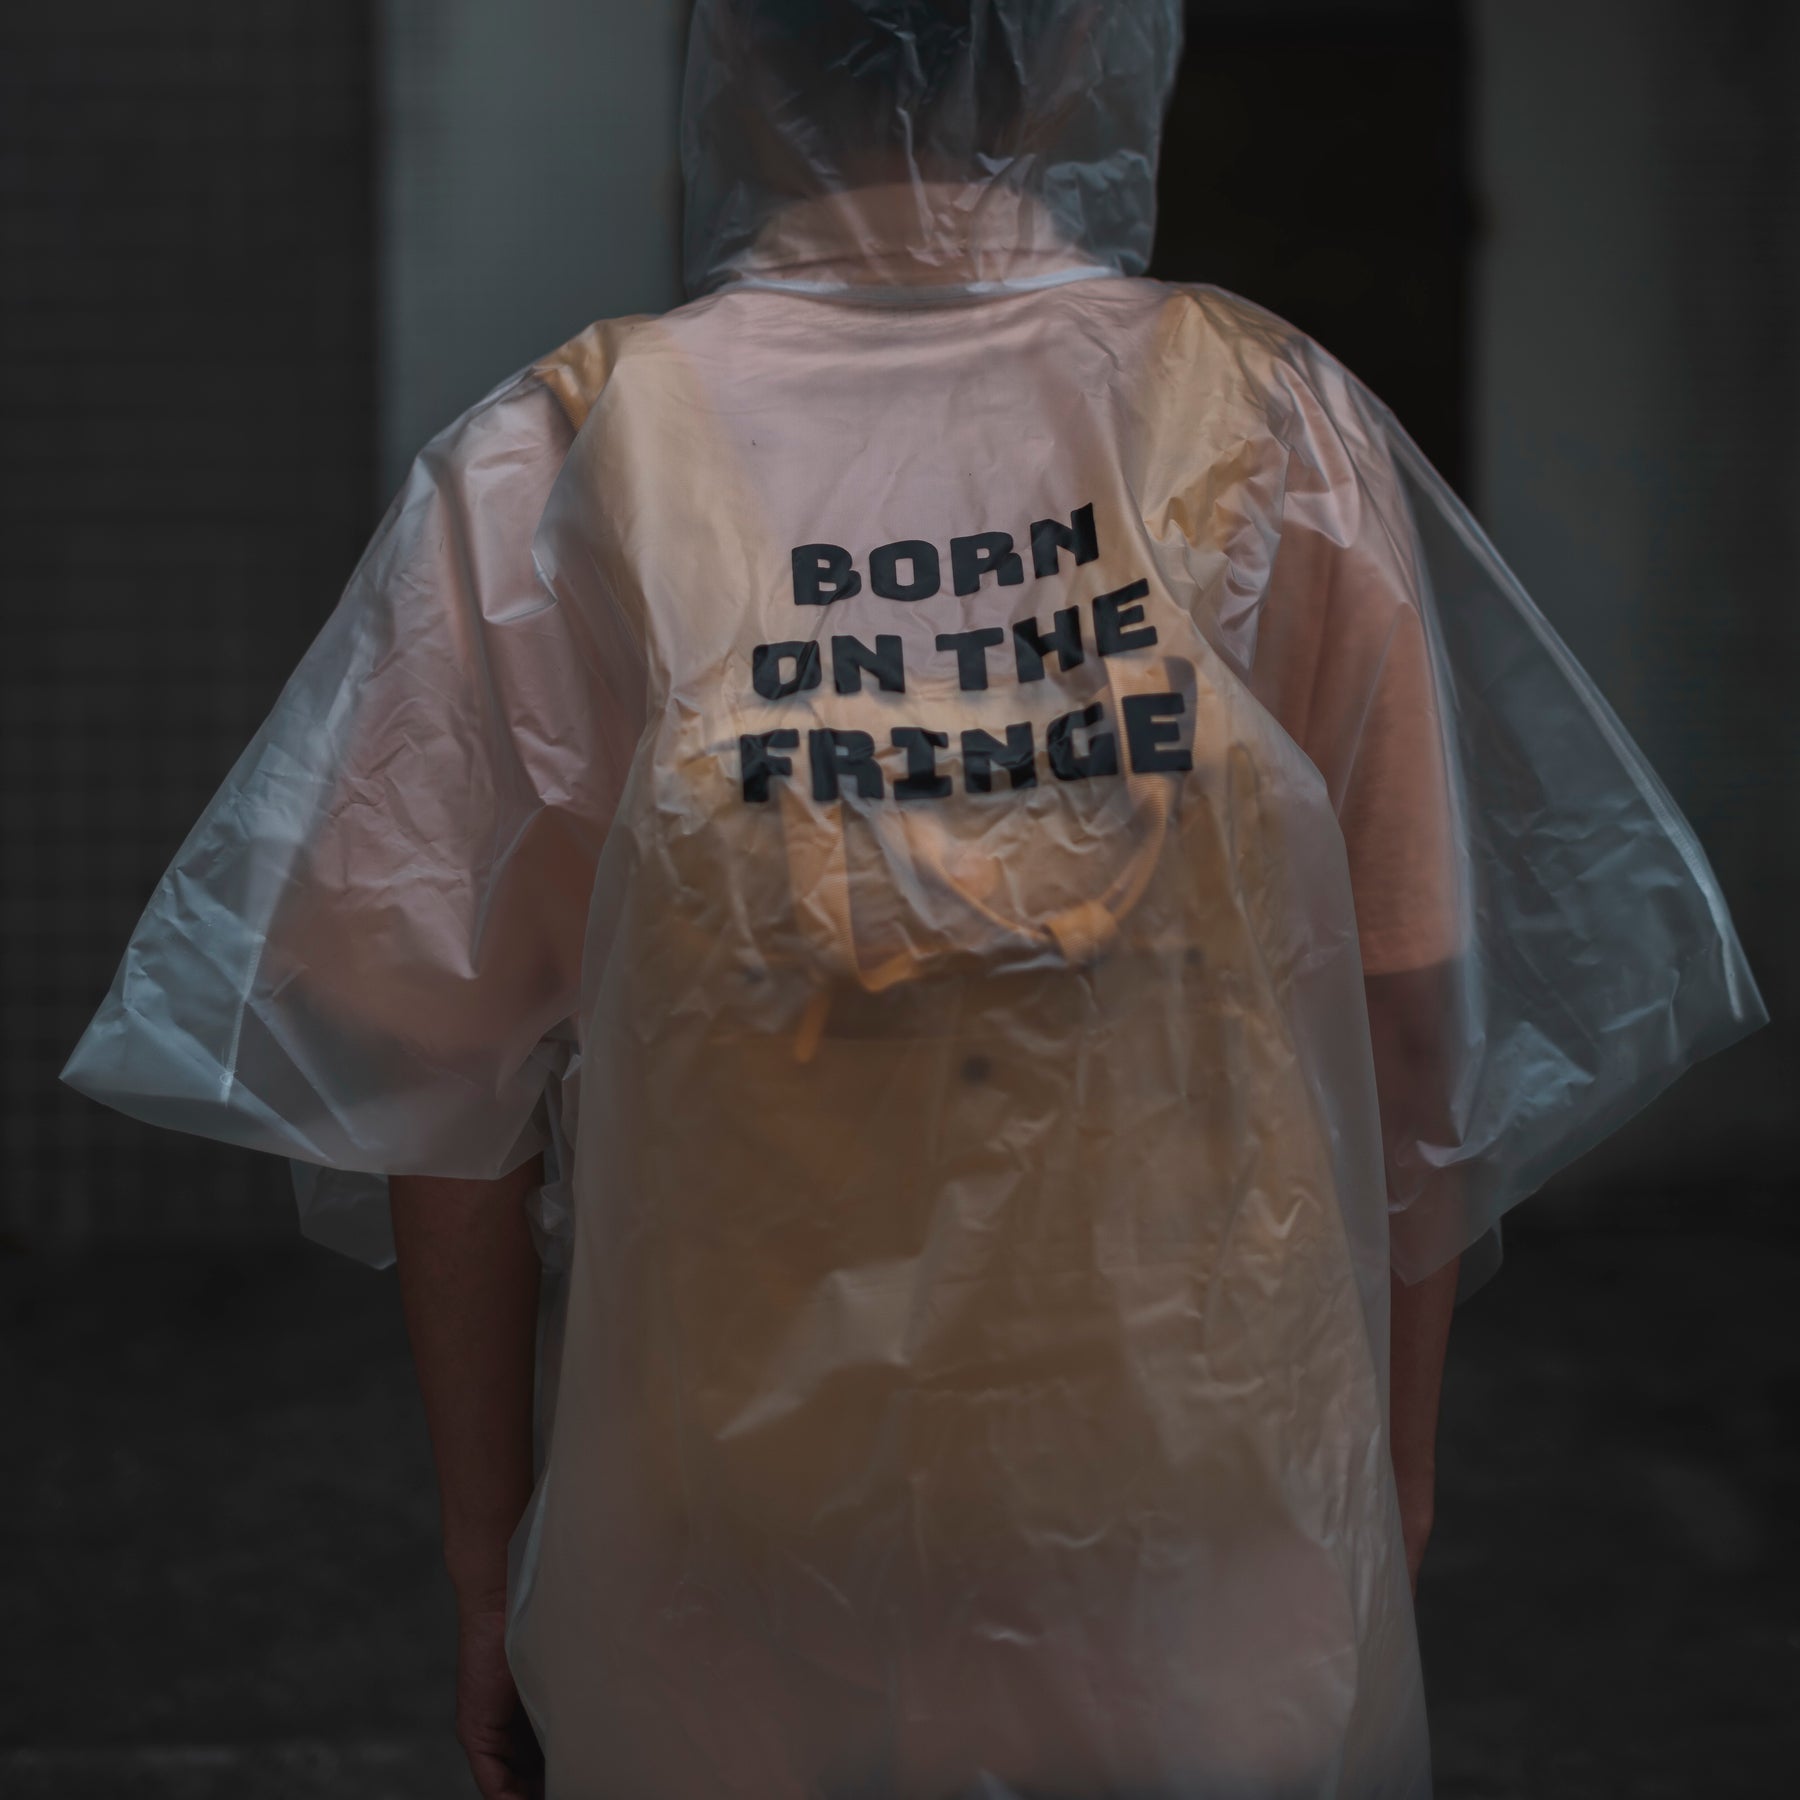 Moral Rain Coat - Moral Bags